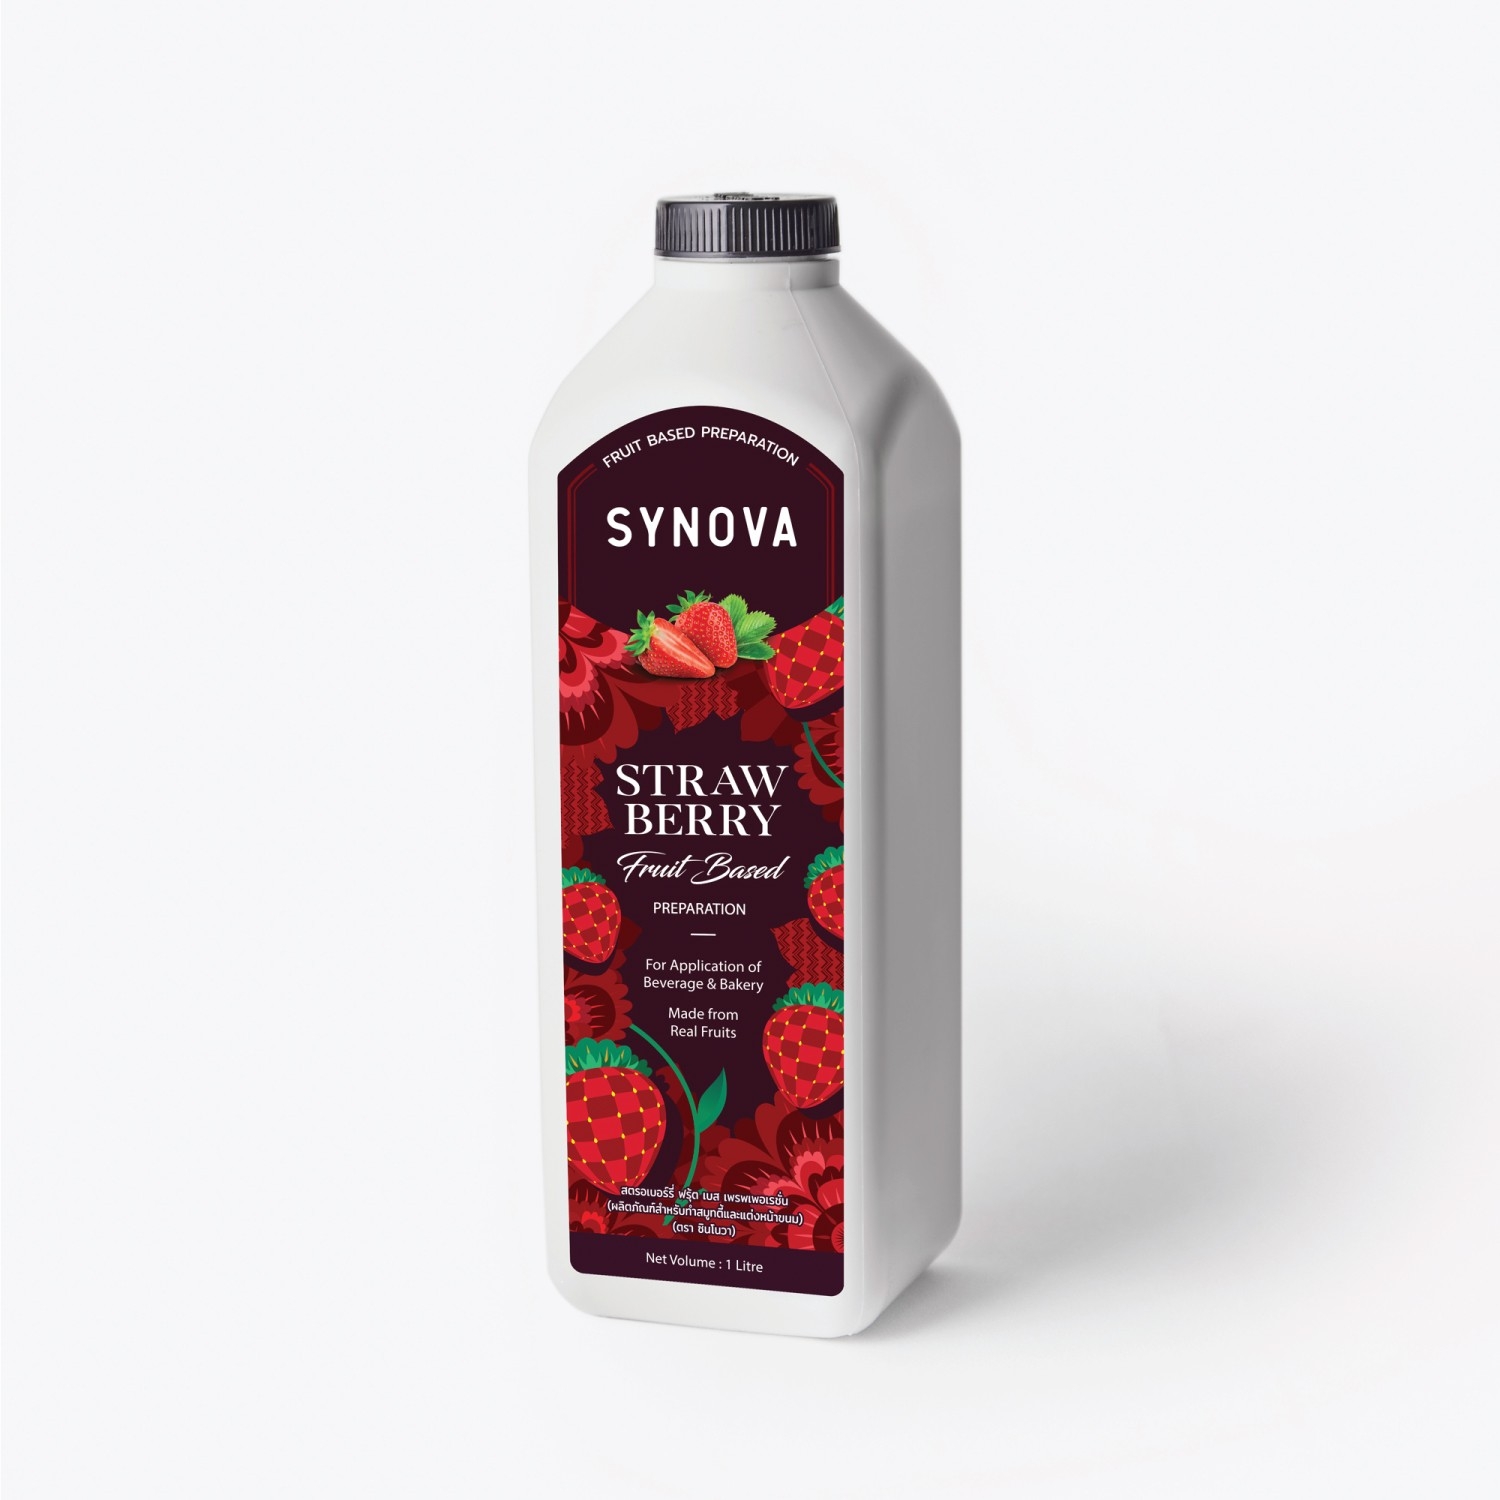 SYNOVA Strawberry Fruit Based Preparation (Box)